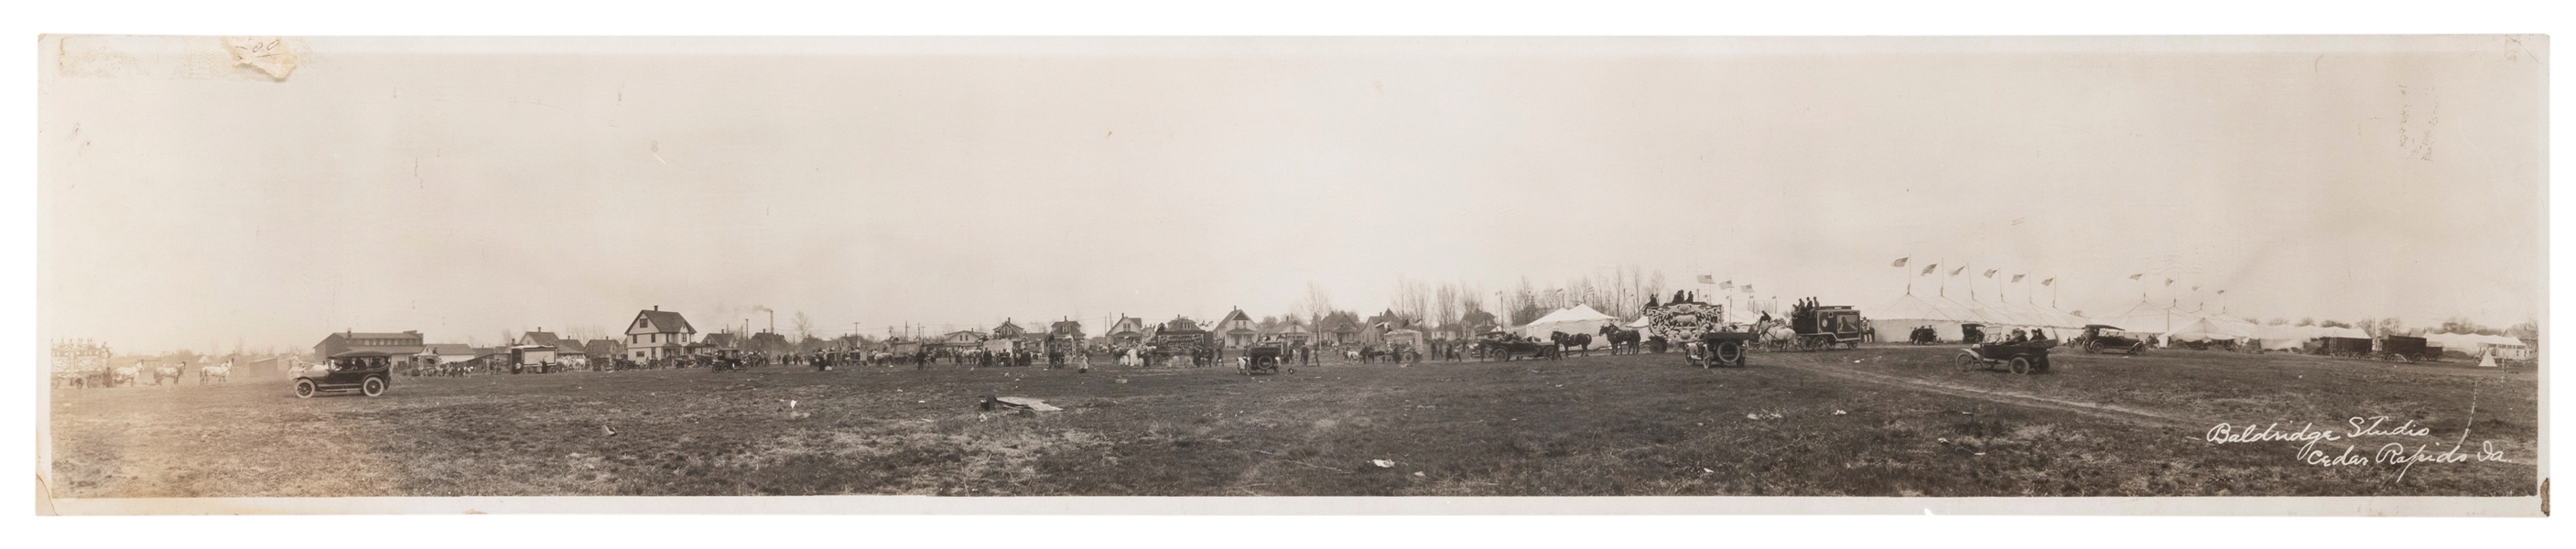  Coop & Lent’s Circus Panoramic Photograph. Cedar Rapids, IA...